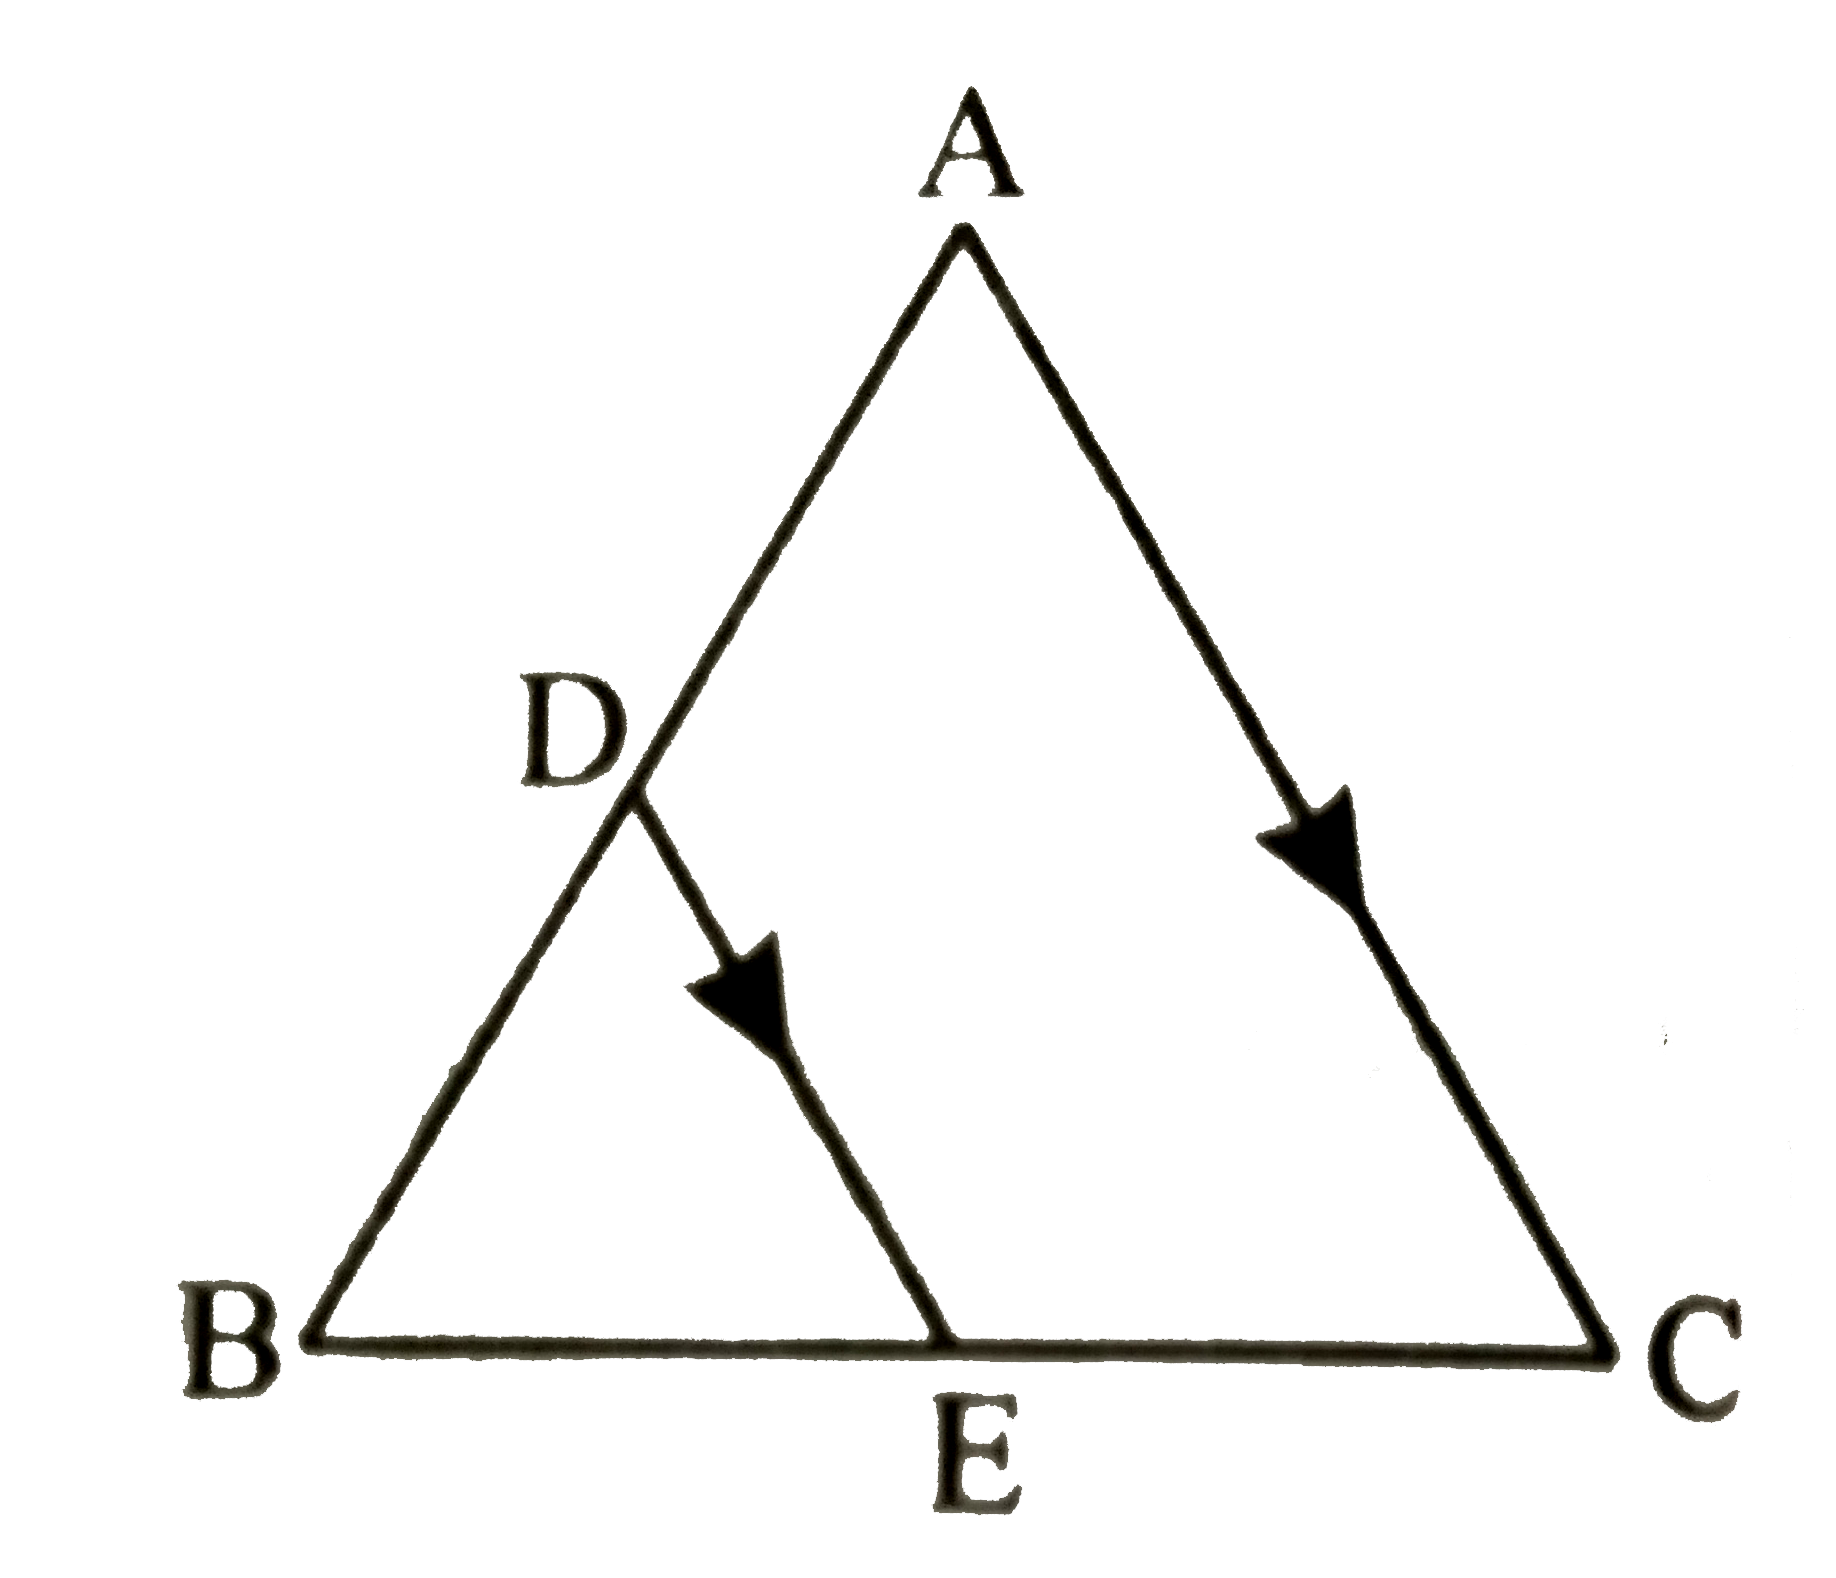 यदि triangle ABC की भुजा AB पर एक बिंदु D है | तथा AD : DB = 3:2 और BC पर एक बिंदु E  है | तथा DE||AC है तो त्रिभुज ABC तथा त्रिभुज DBE के क्षेत्रफलो का अनुपात ज्ञात कीजिए |